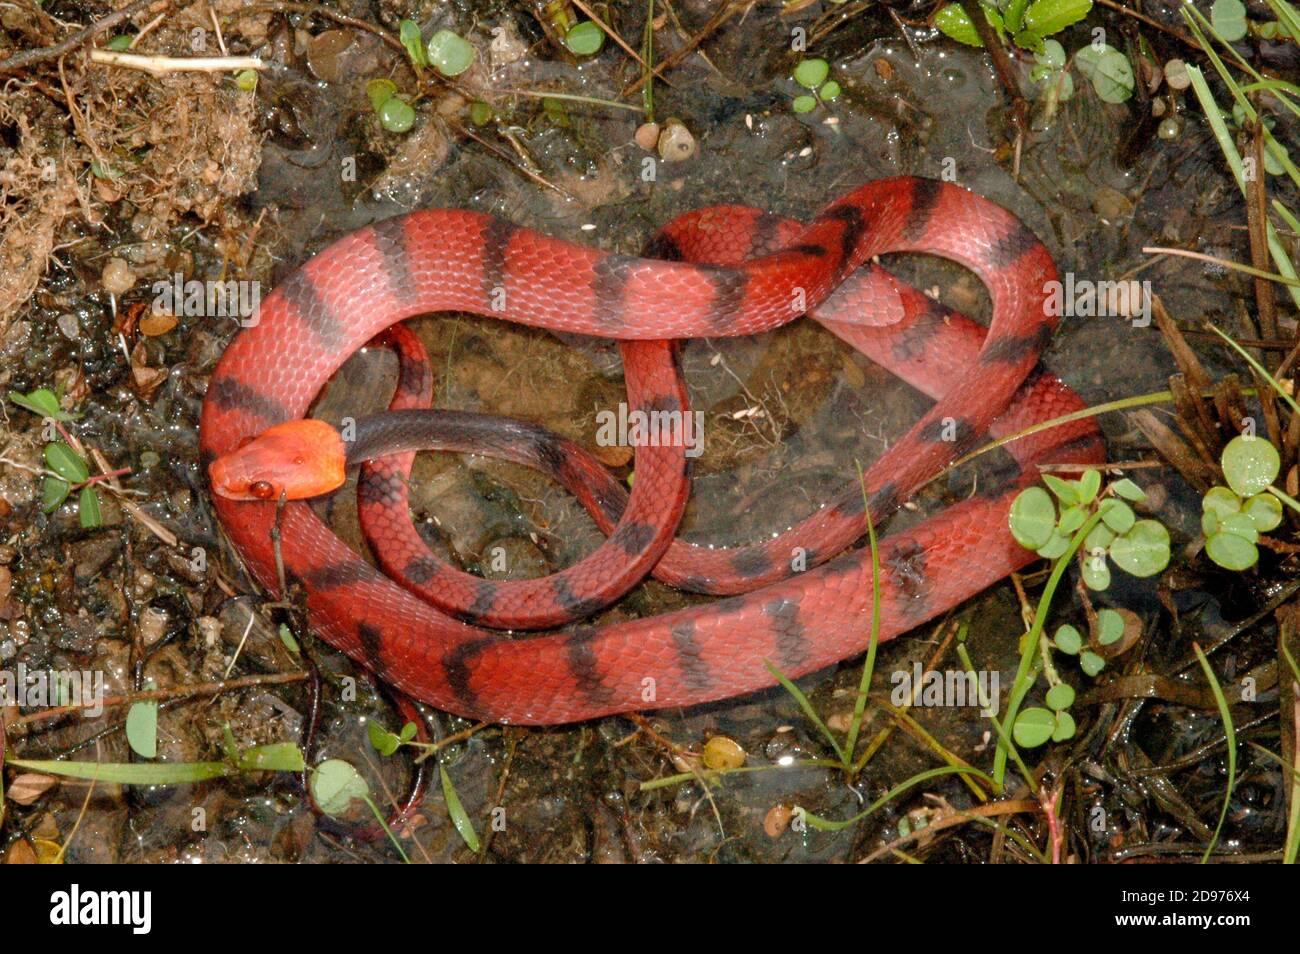 Serpiente de vid roja (Siphlophis compressus), Guyana Francesa Foto de stock